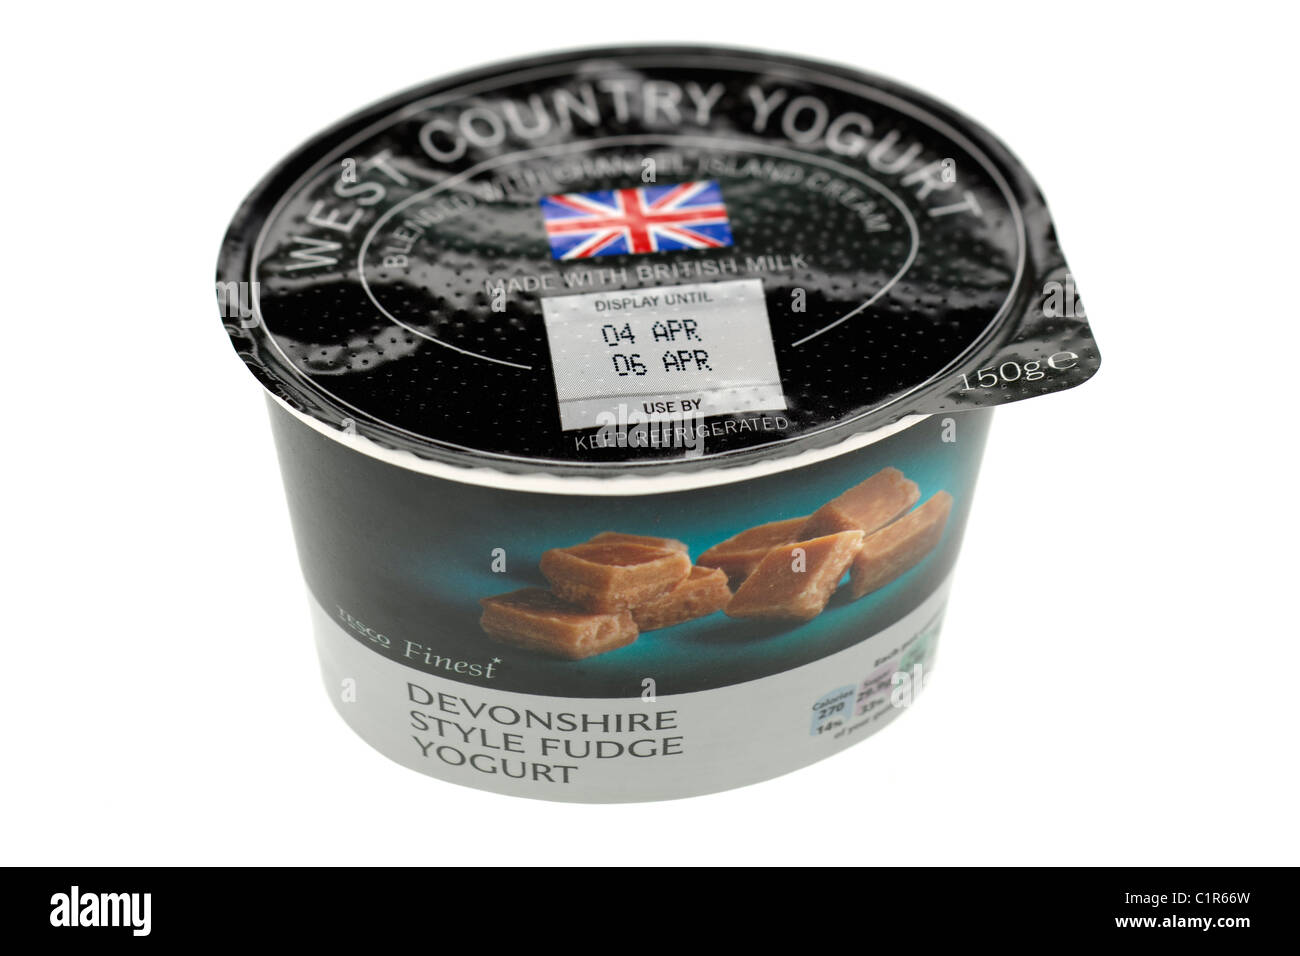 Scatola in cartone della Tesco finest West Country Devonshire style fudge yogurt fatto con latte britannico Foto Stock